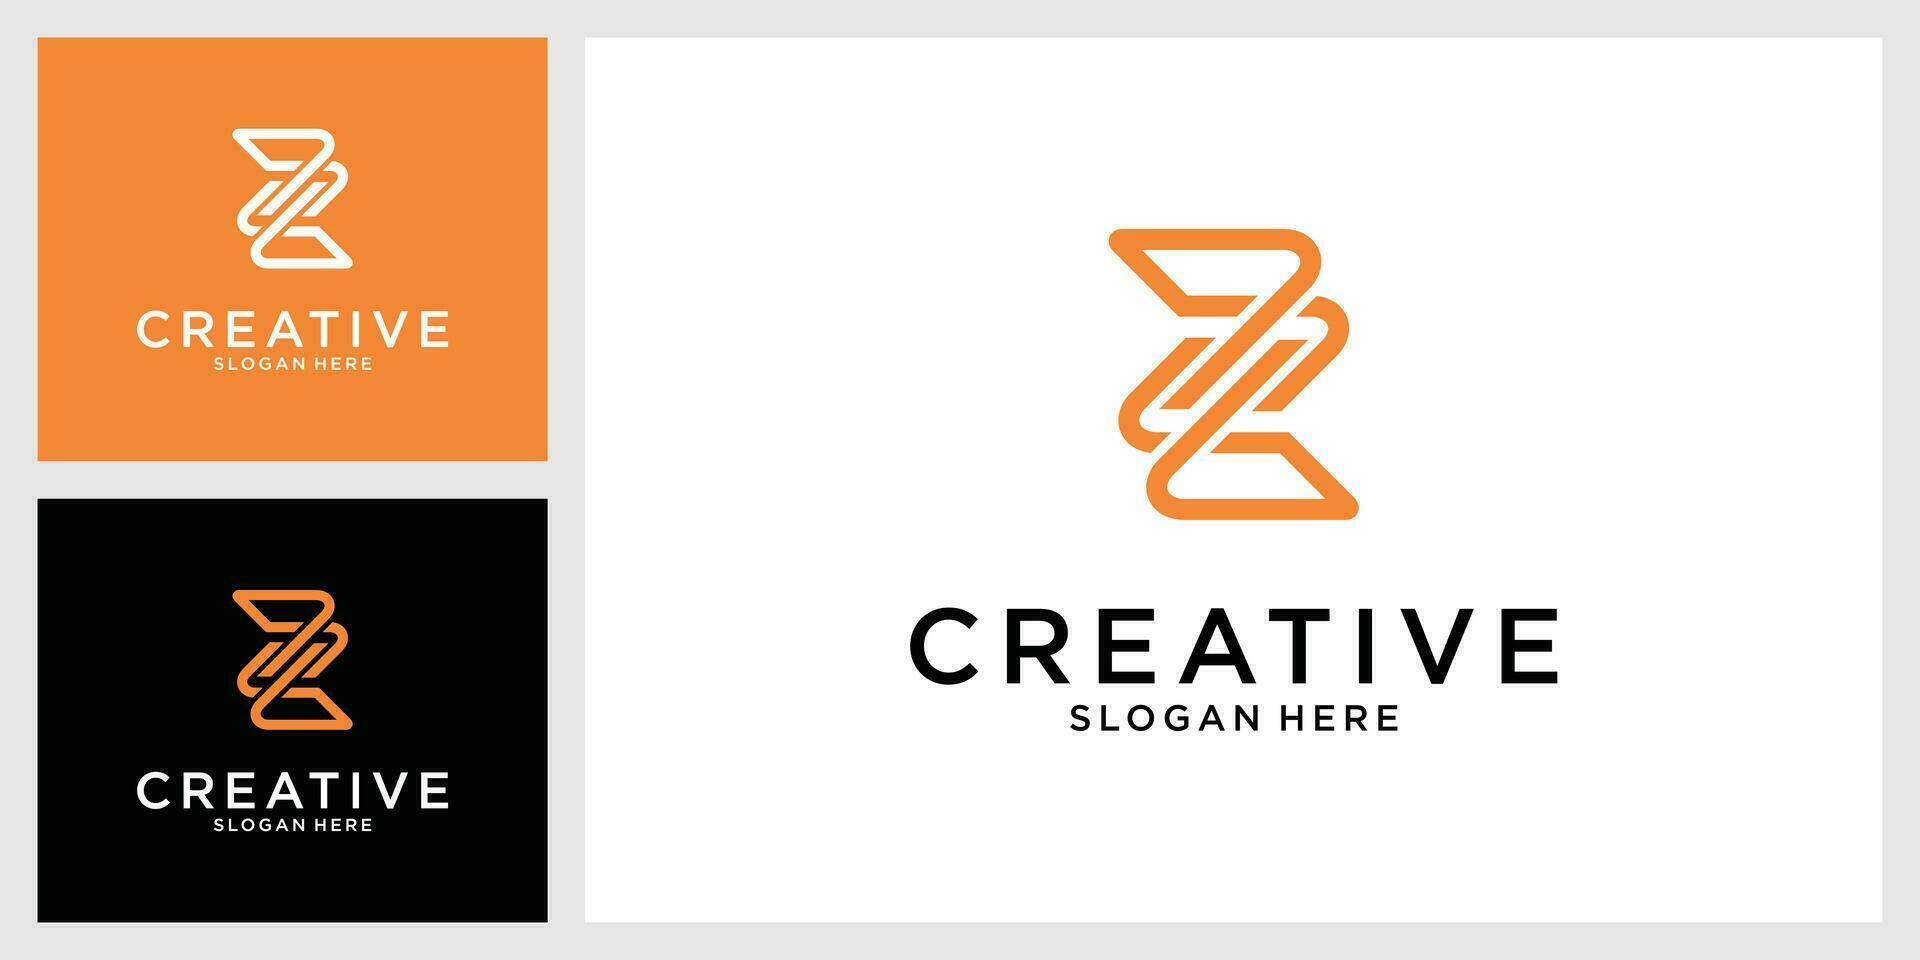 Letter Z or ZZ monogram logo design vector